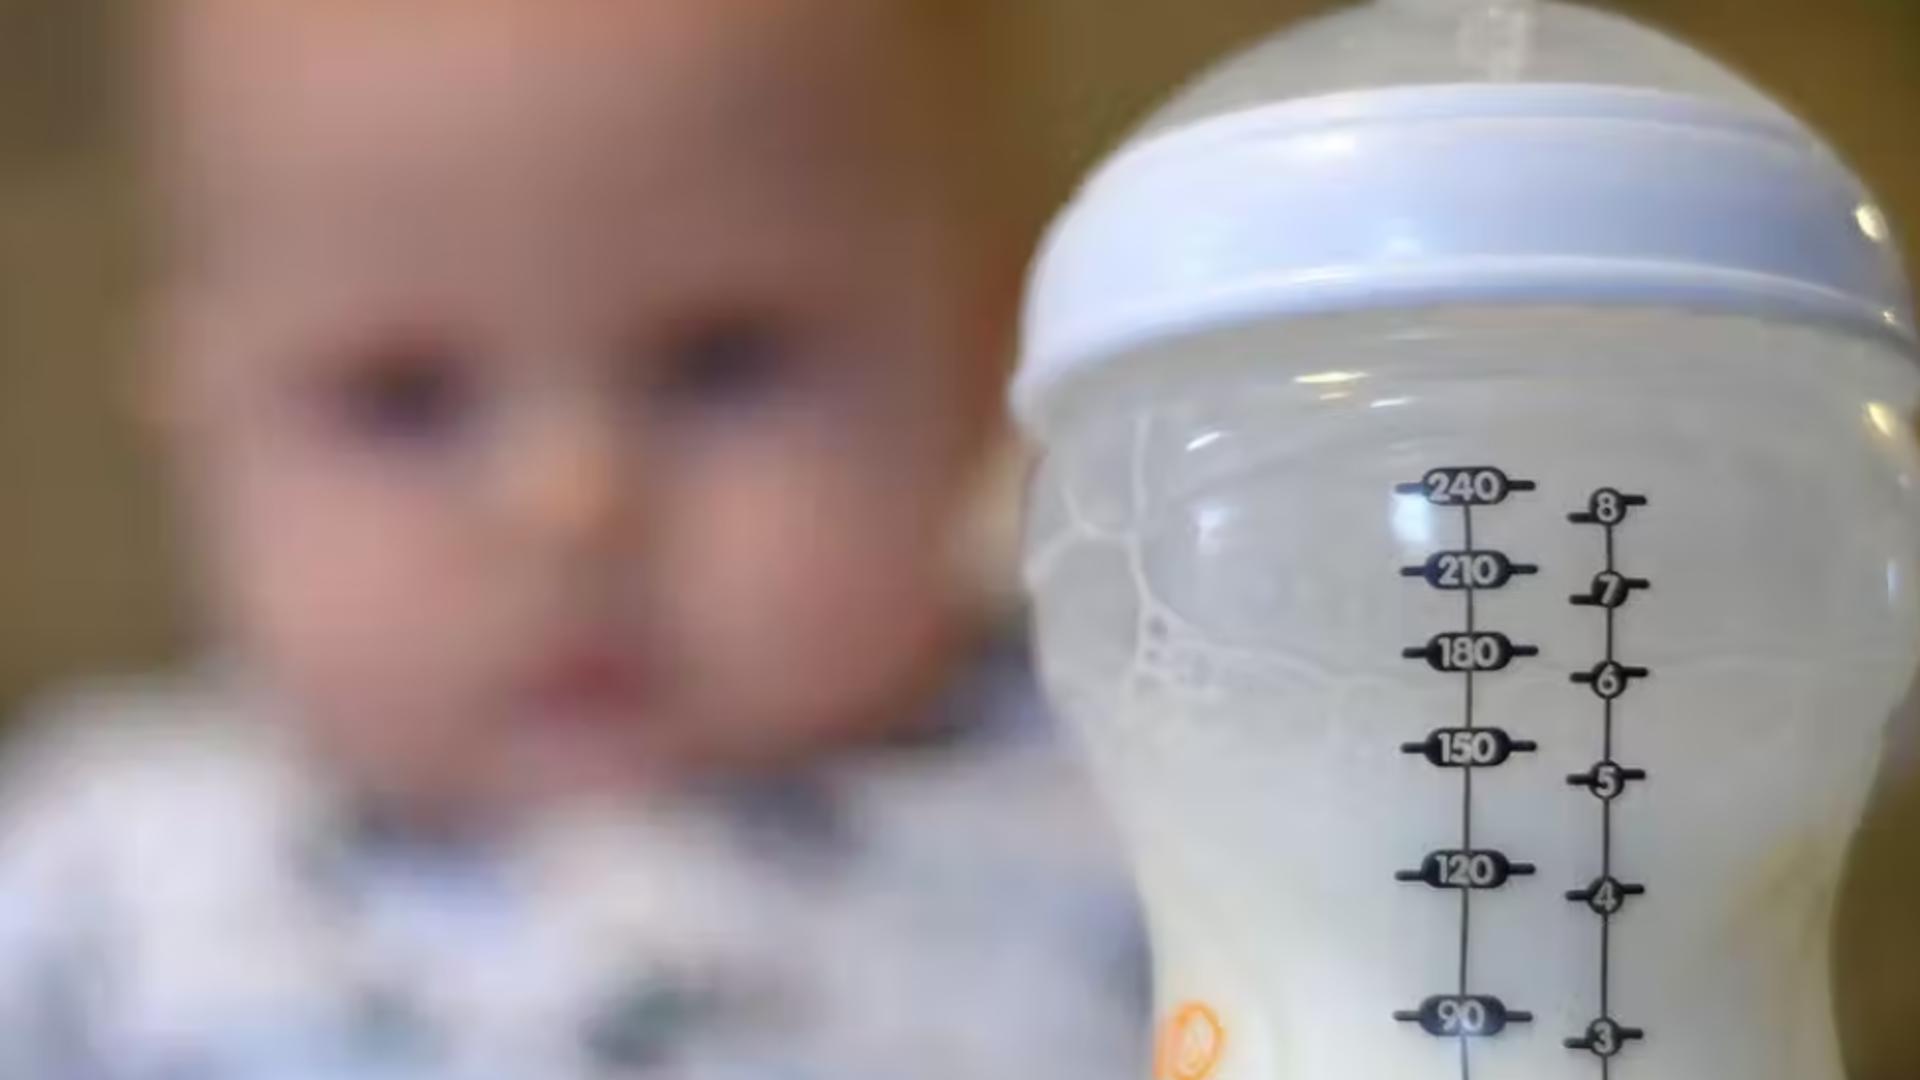 CRIZĂ de lapte praf peste Ocean: Bebelușii din Statele Unite, în pericol extrem - Importuri masive din Europa